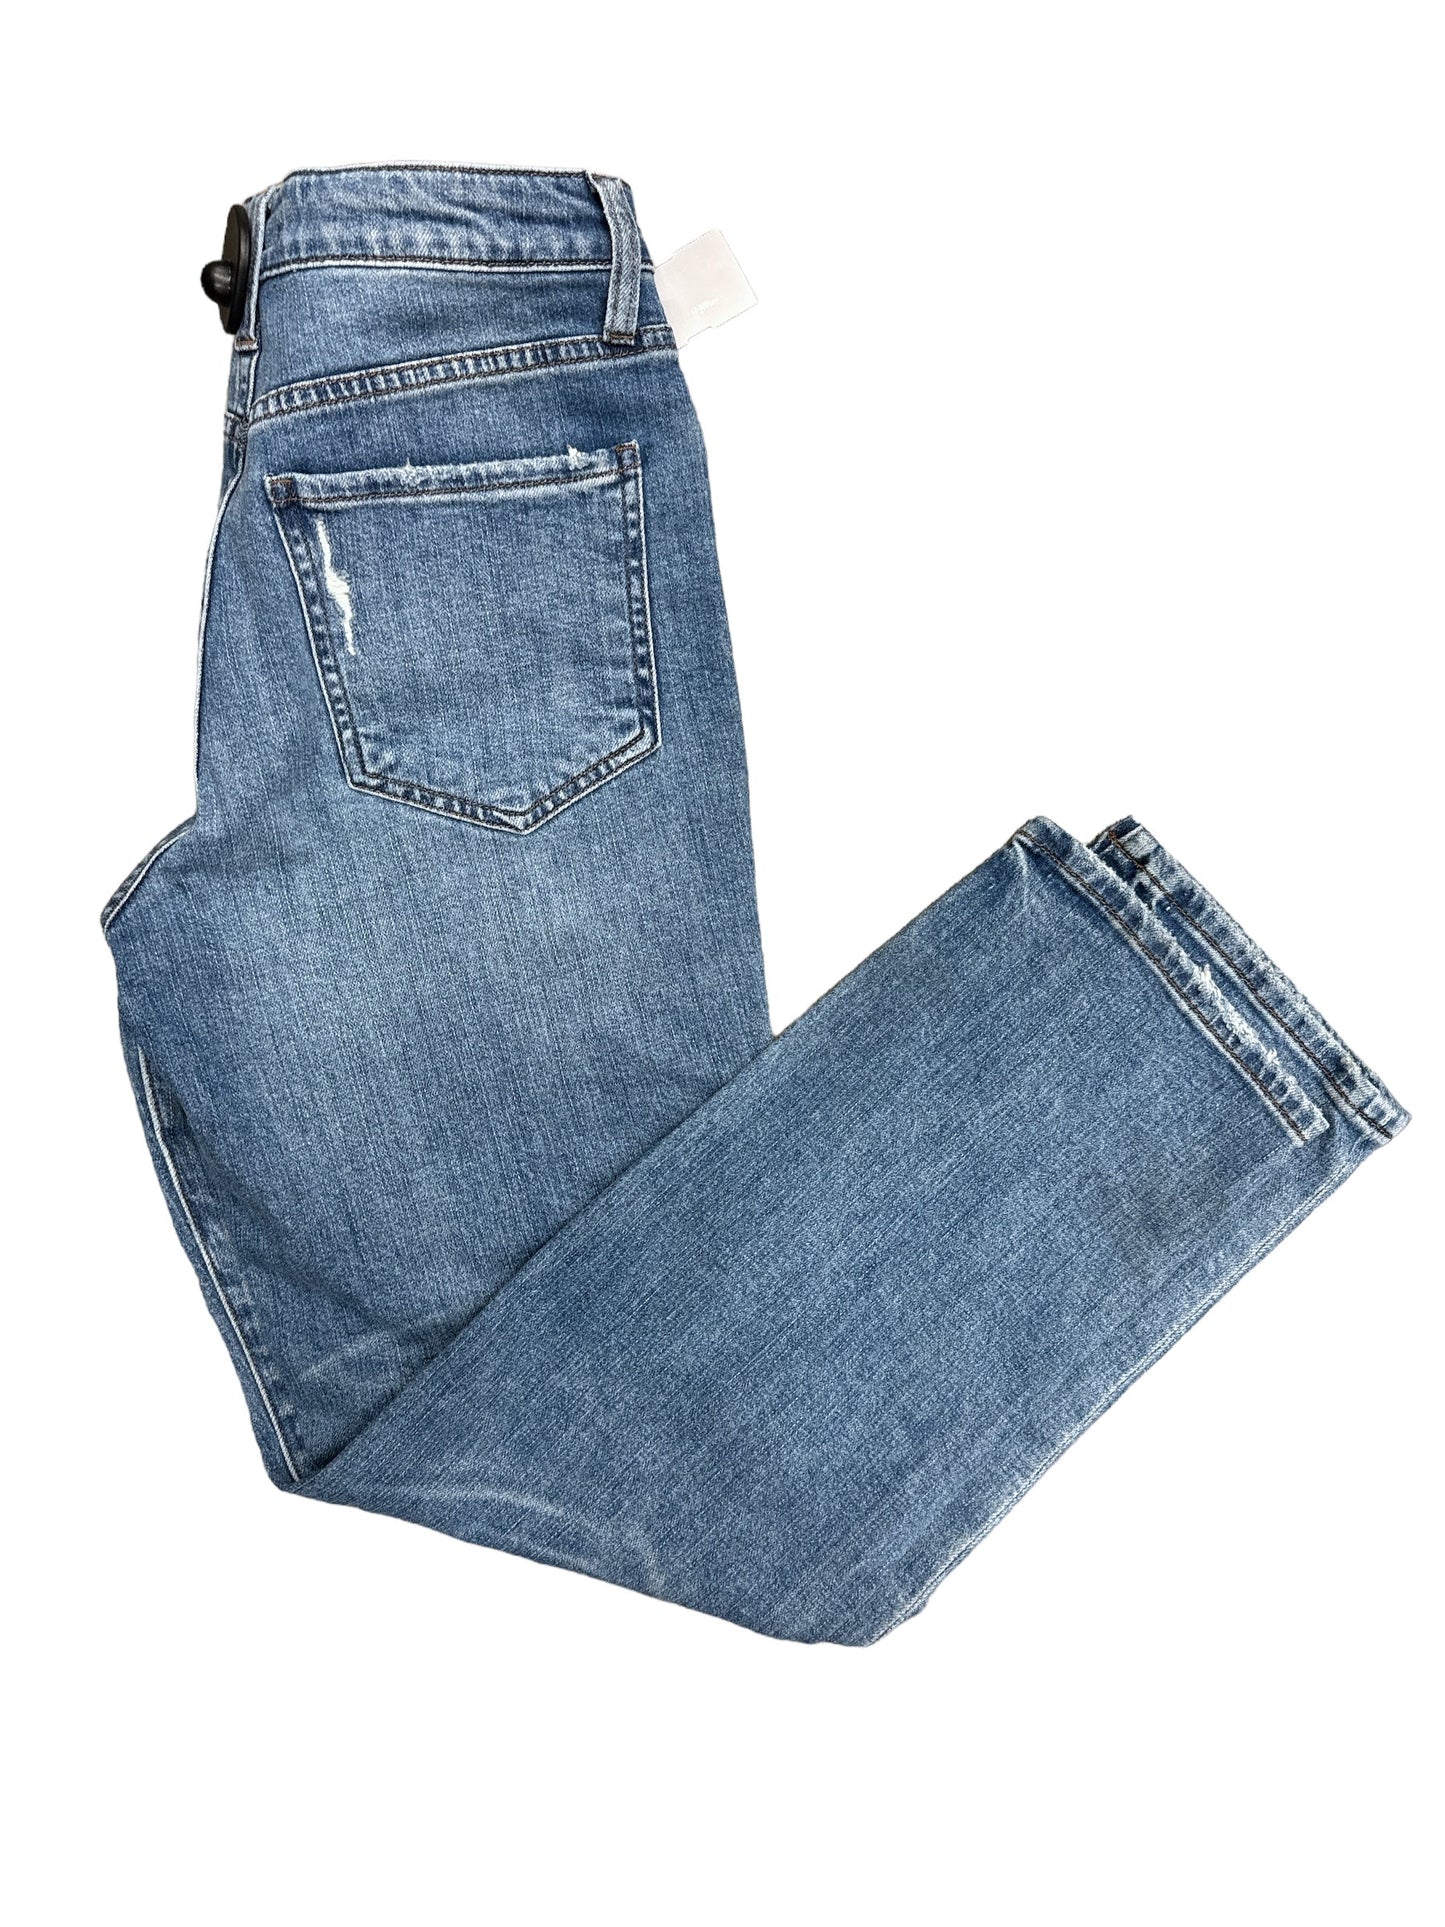 Jeans Boyfriend By Kut  Size: 6